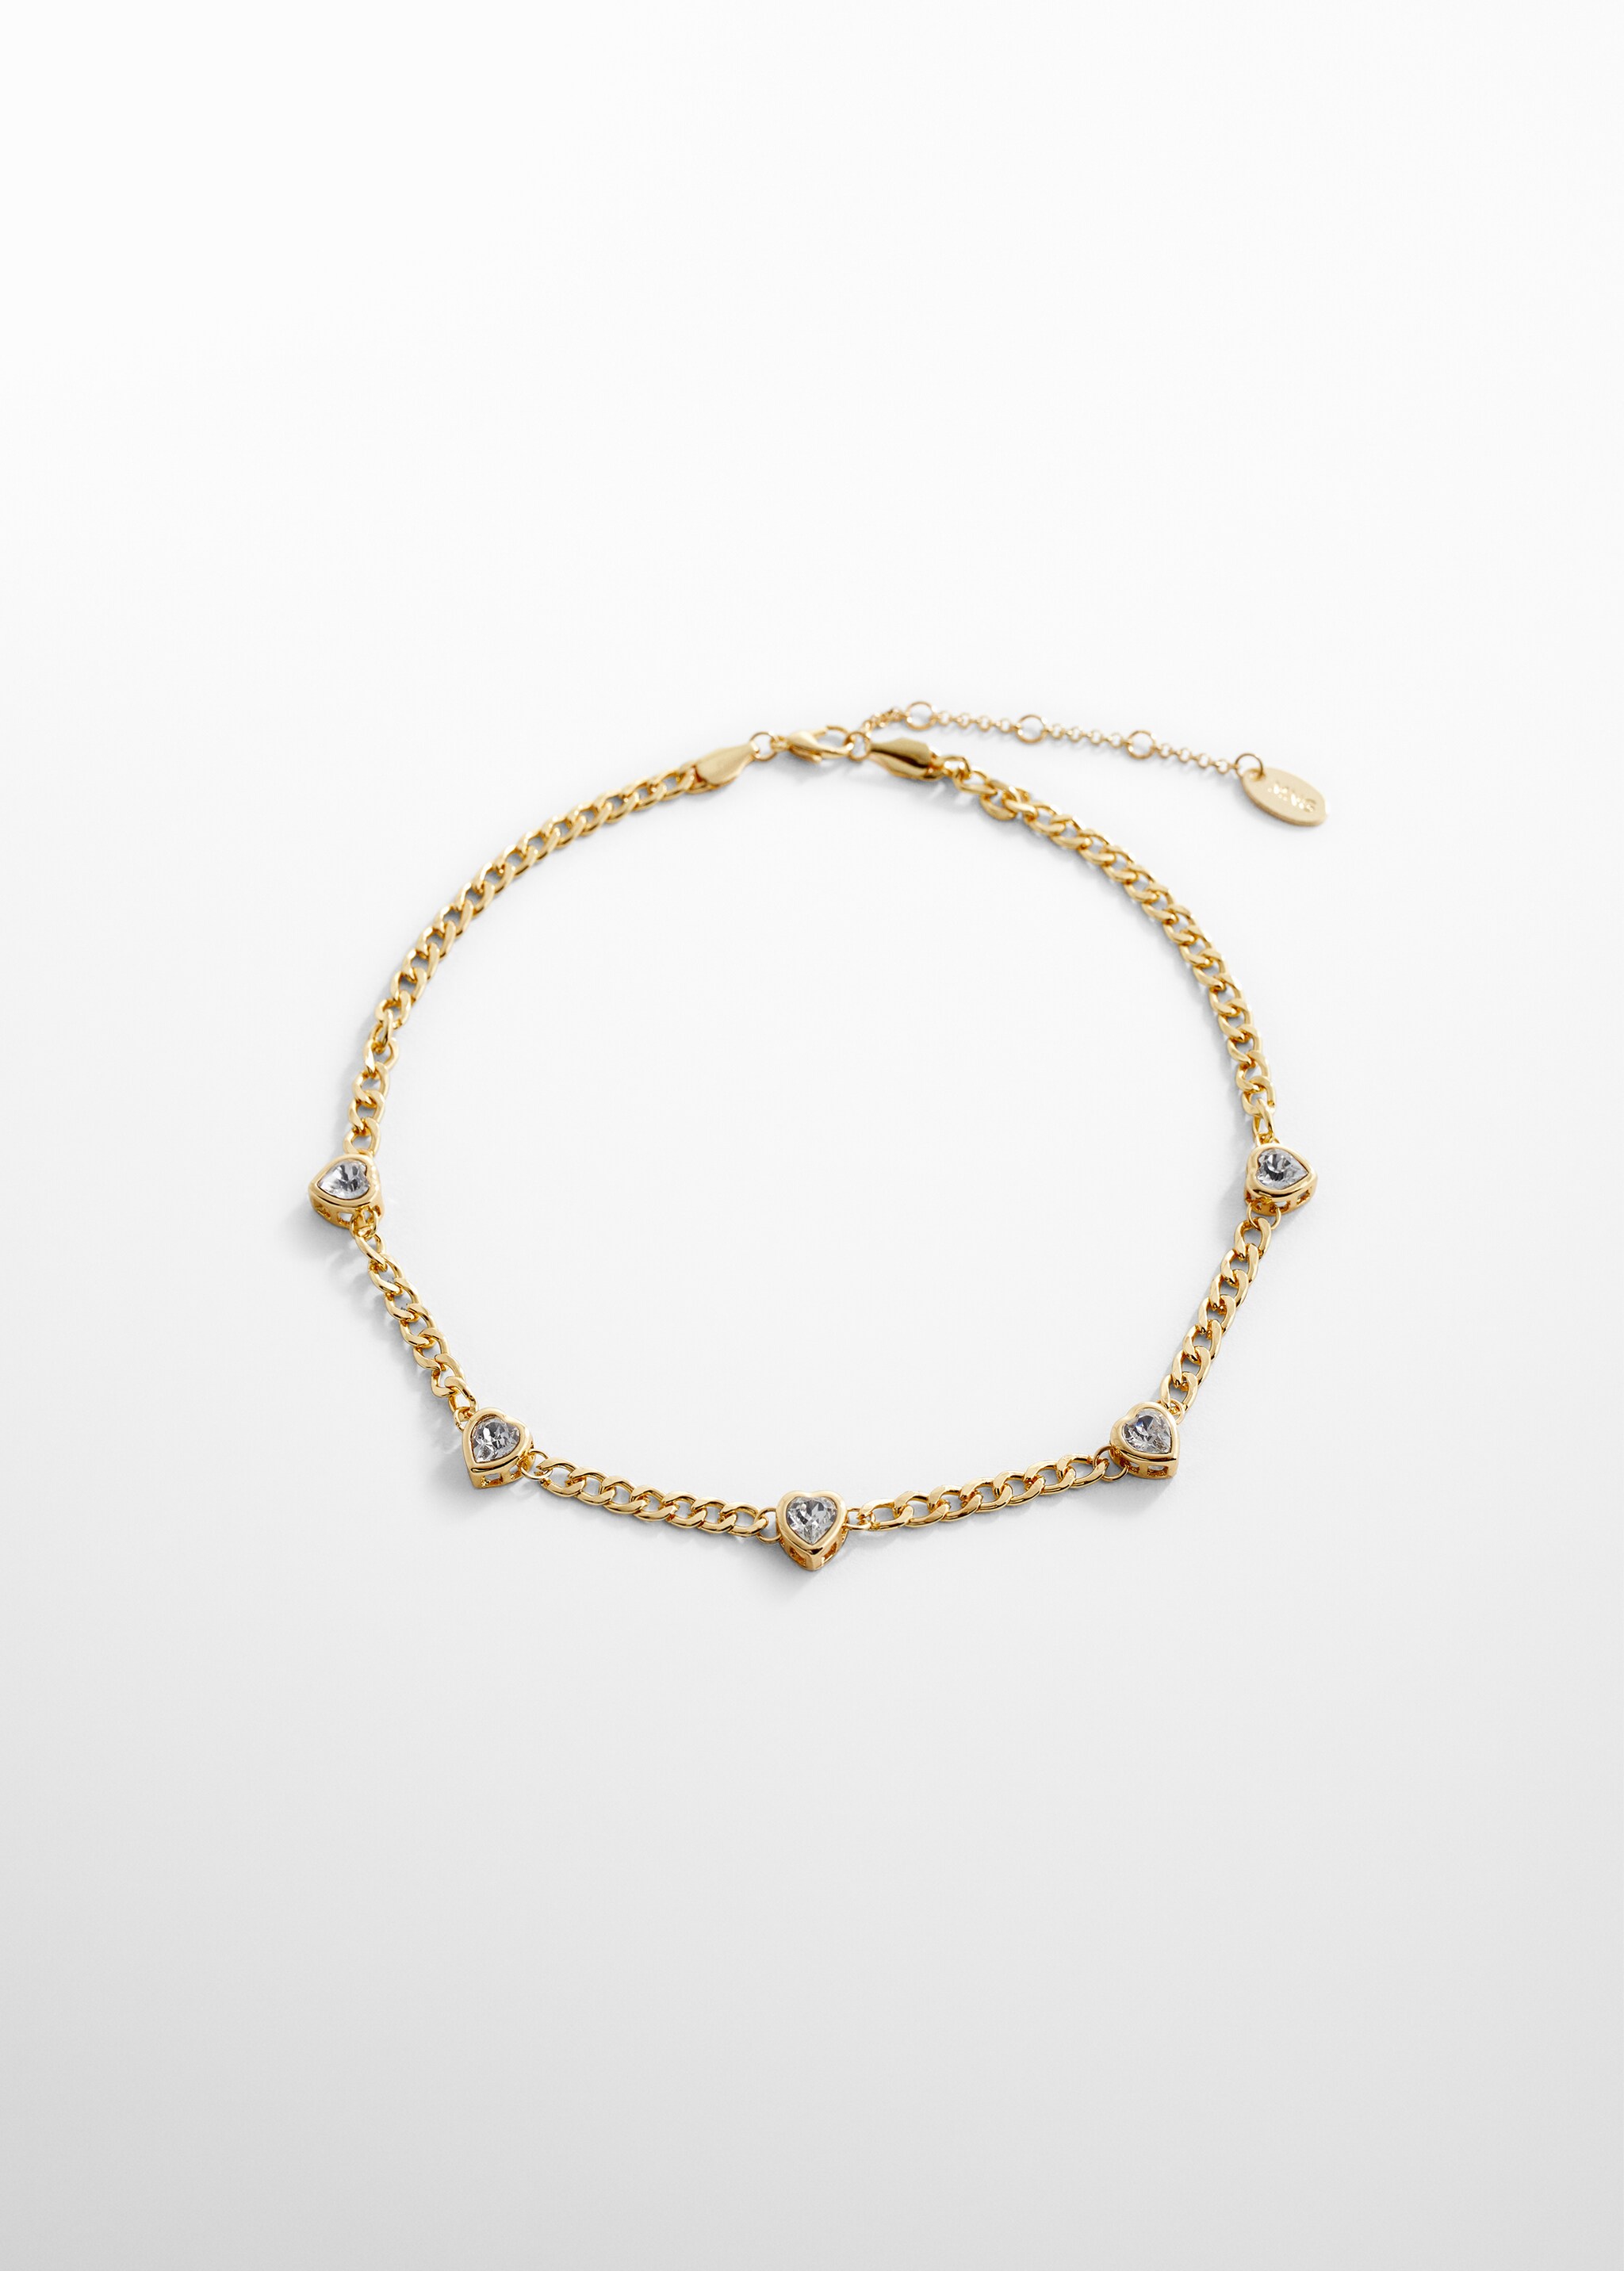 Ожерелье из цепочек с кристаллами - Изделие без модели